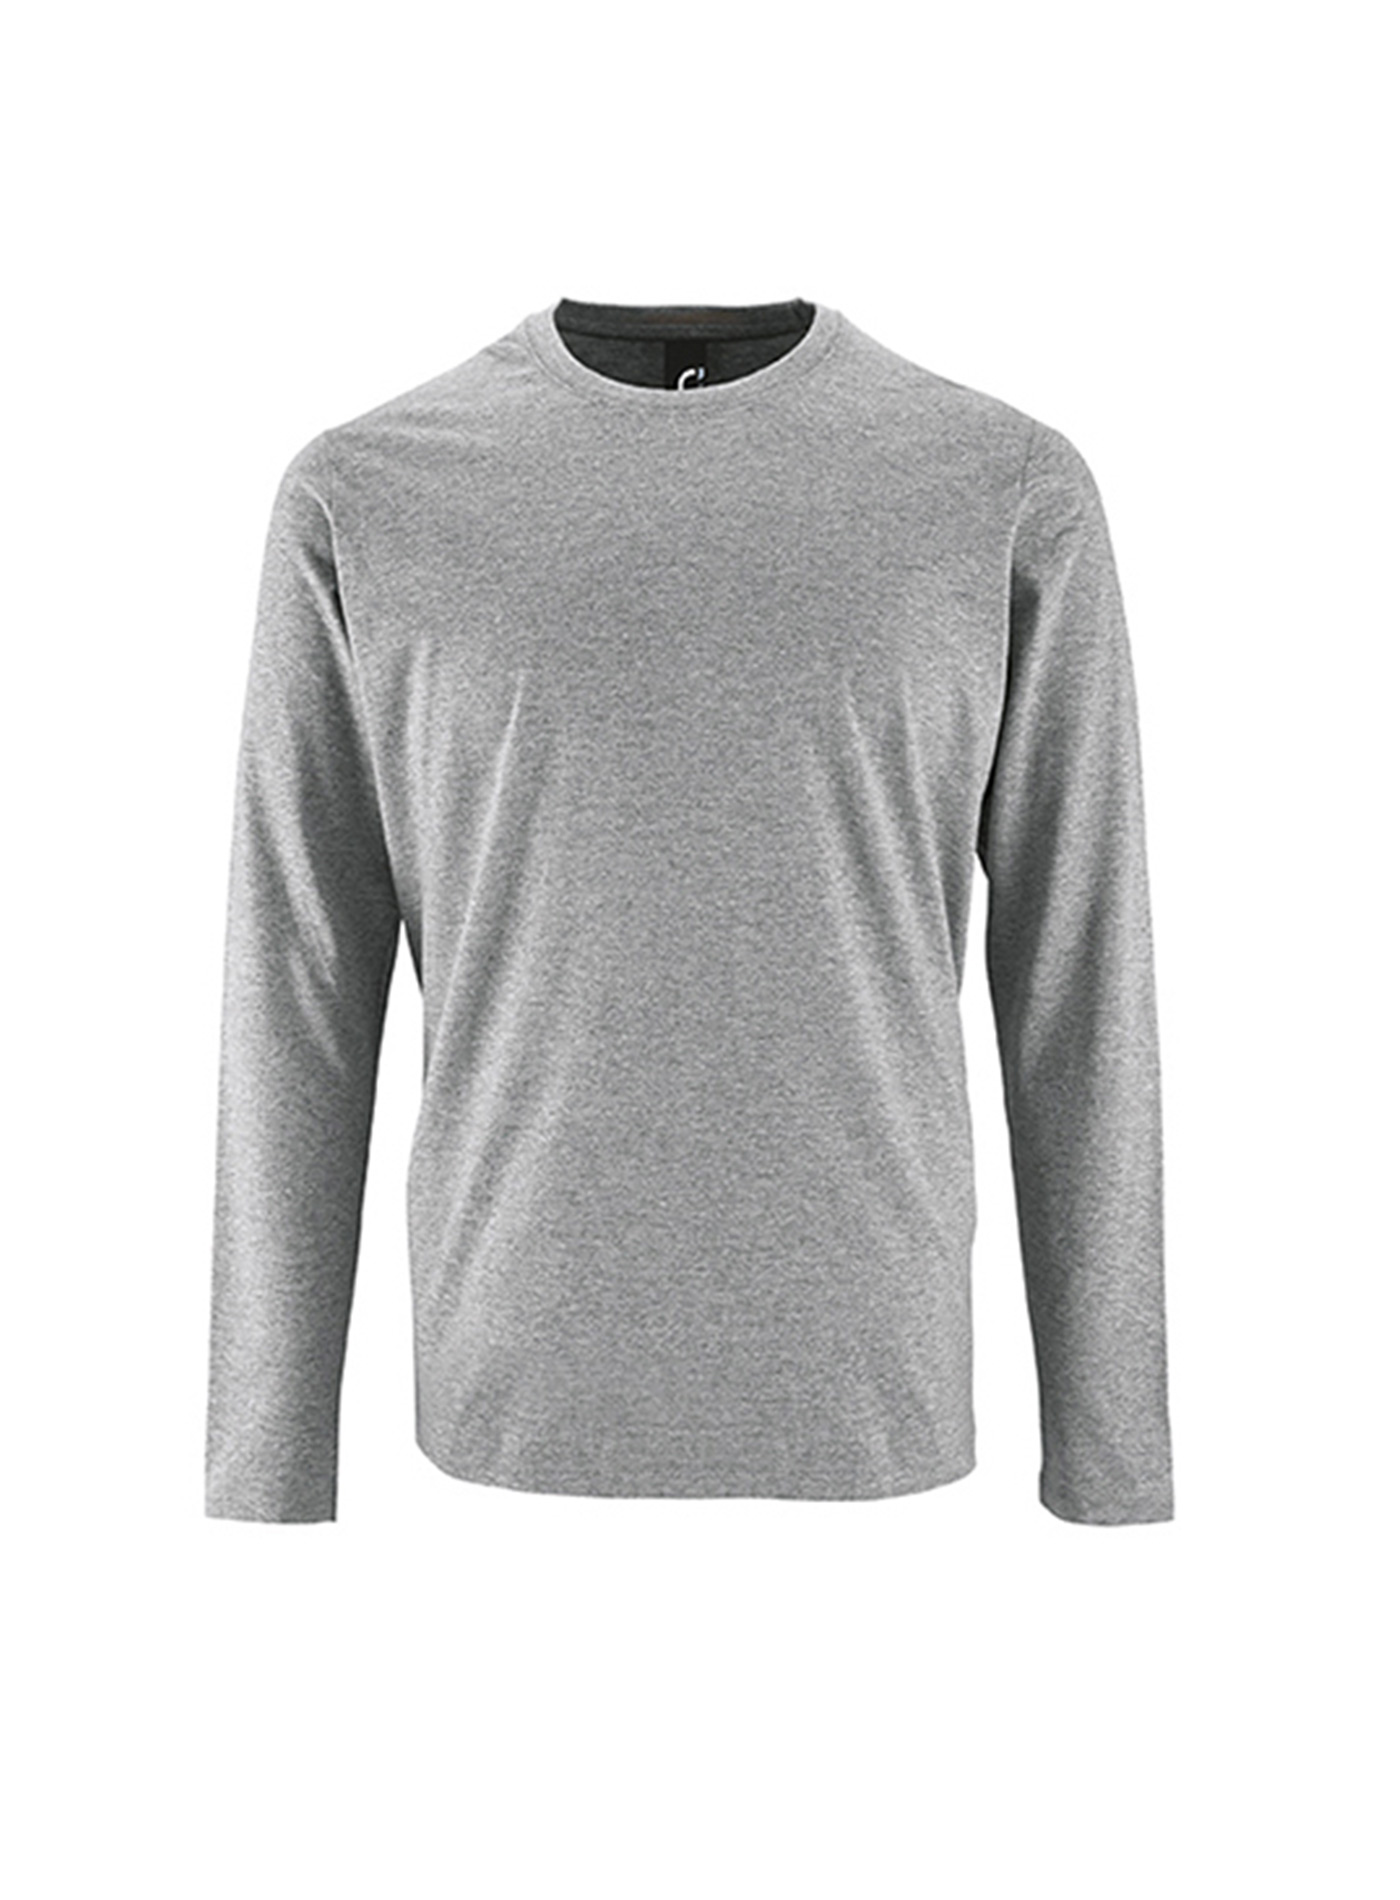 Pánské tričko s dlouhým rukávem SOL´S Imperial - Světle šedý melír XS